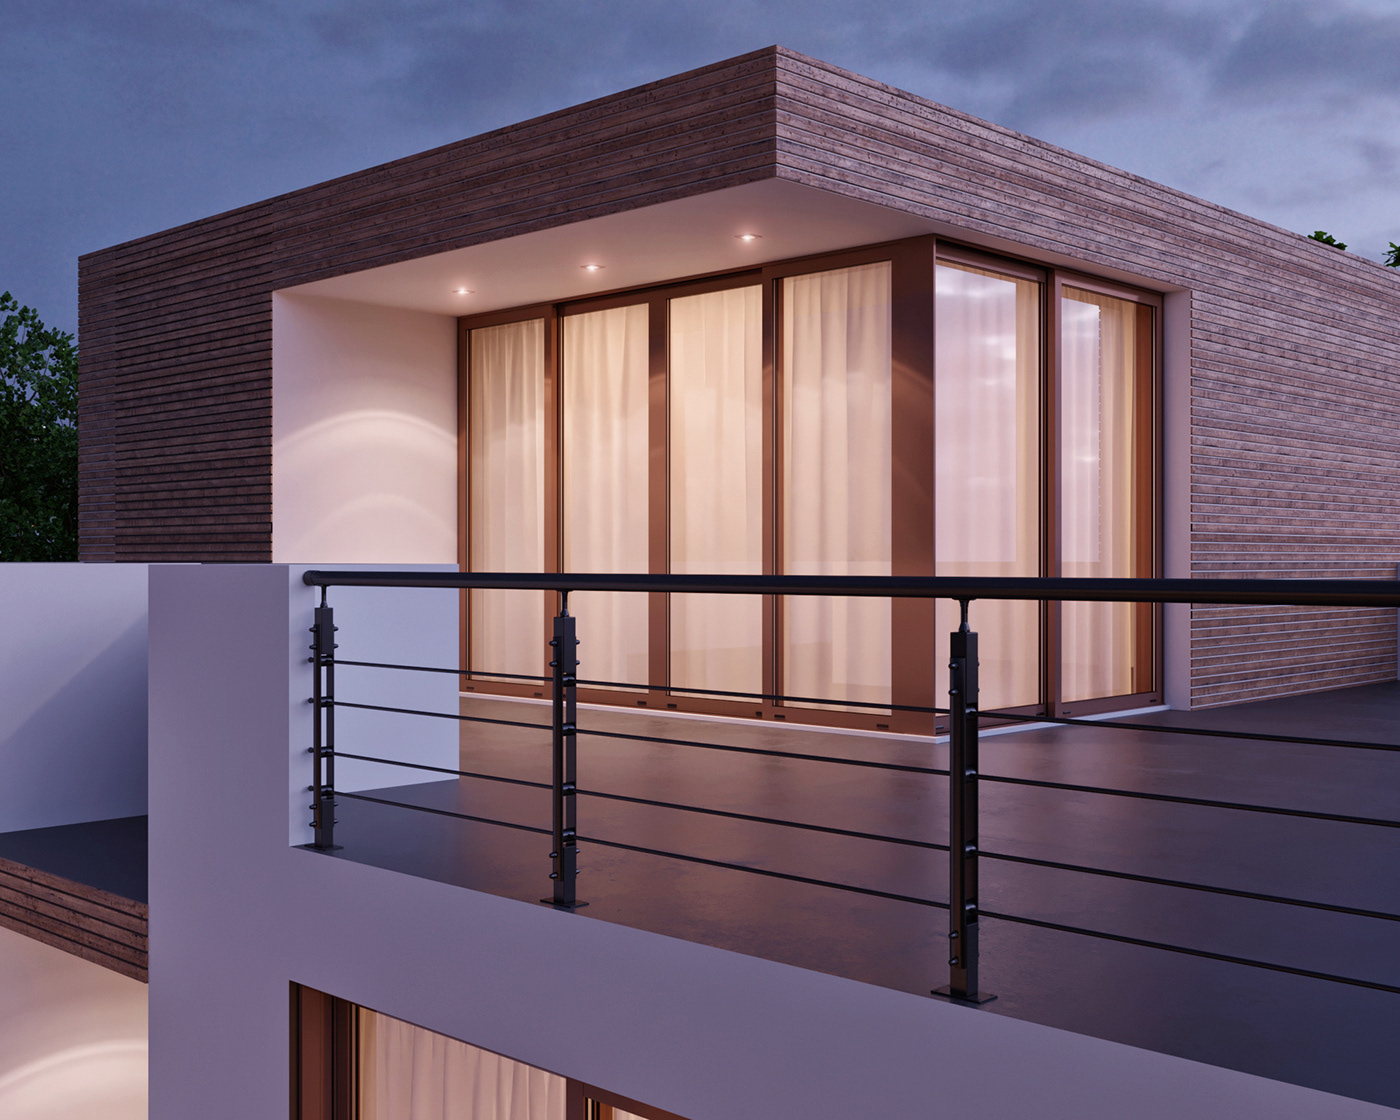 3dsmax corona photoshop Render visualization exterior house minimalismstyle luxry dayngiht